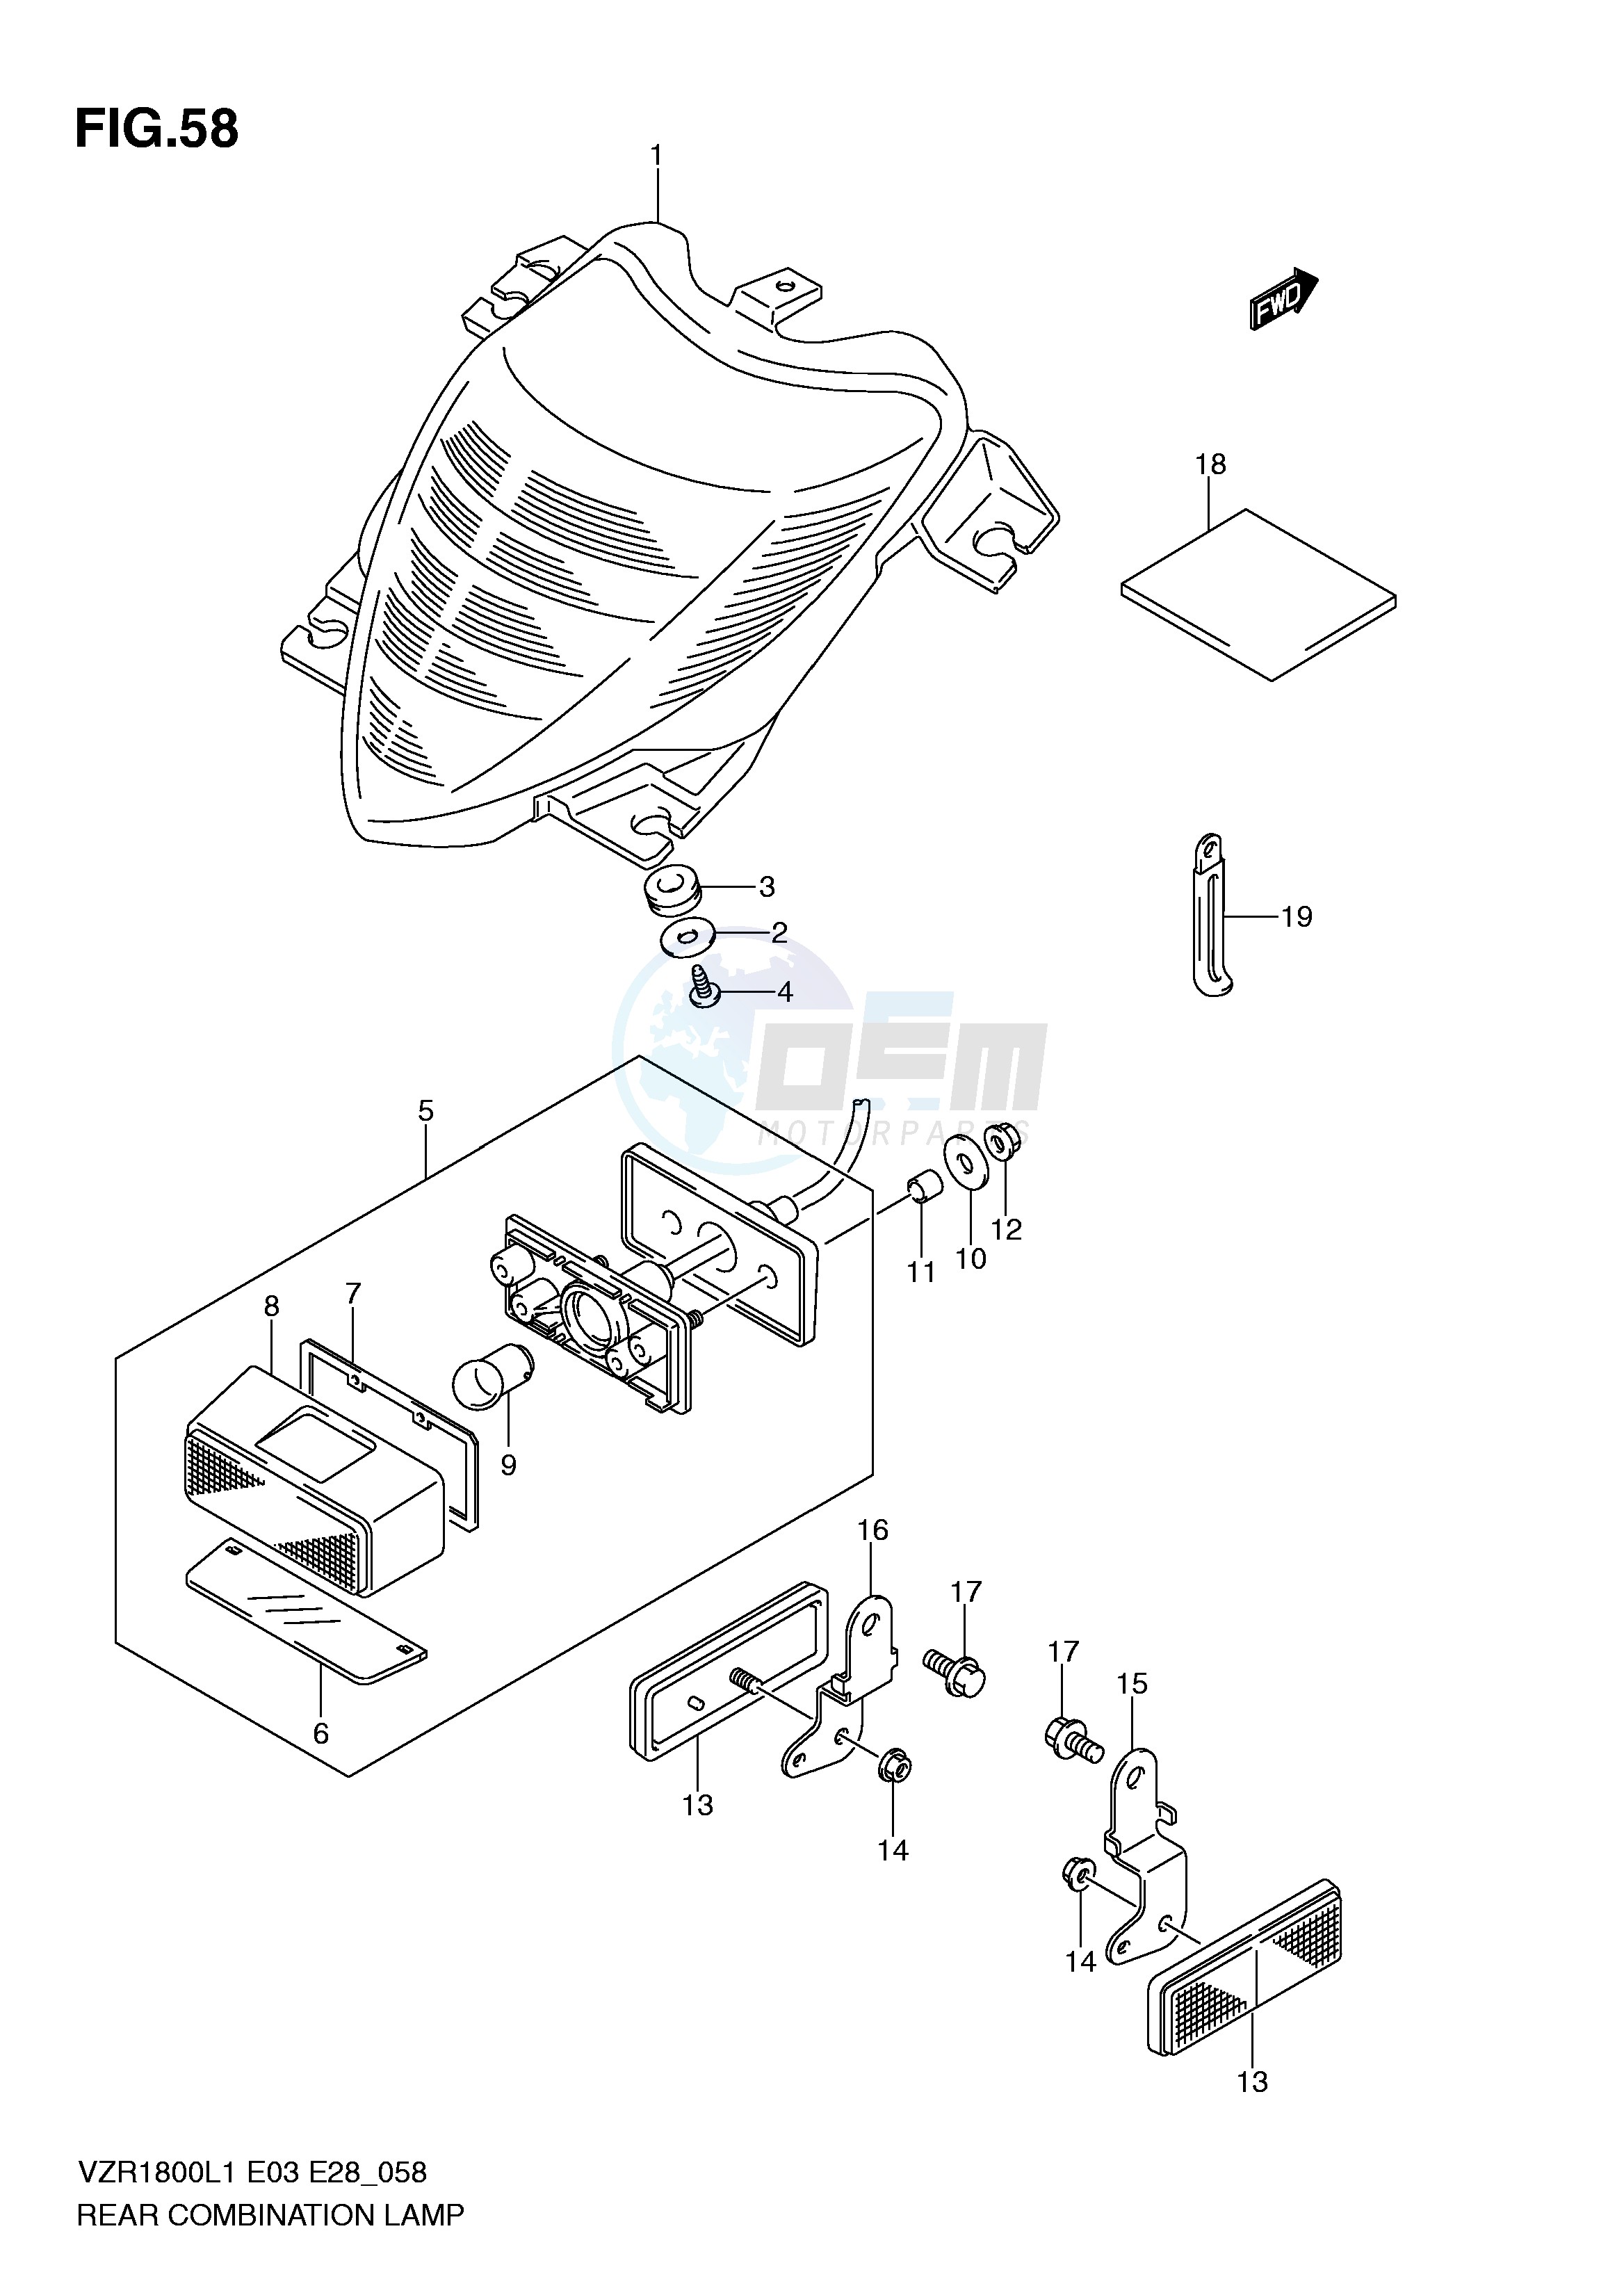 REAR COMBINATION LAMP (VZR1800ZL1 E28) blueprint